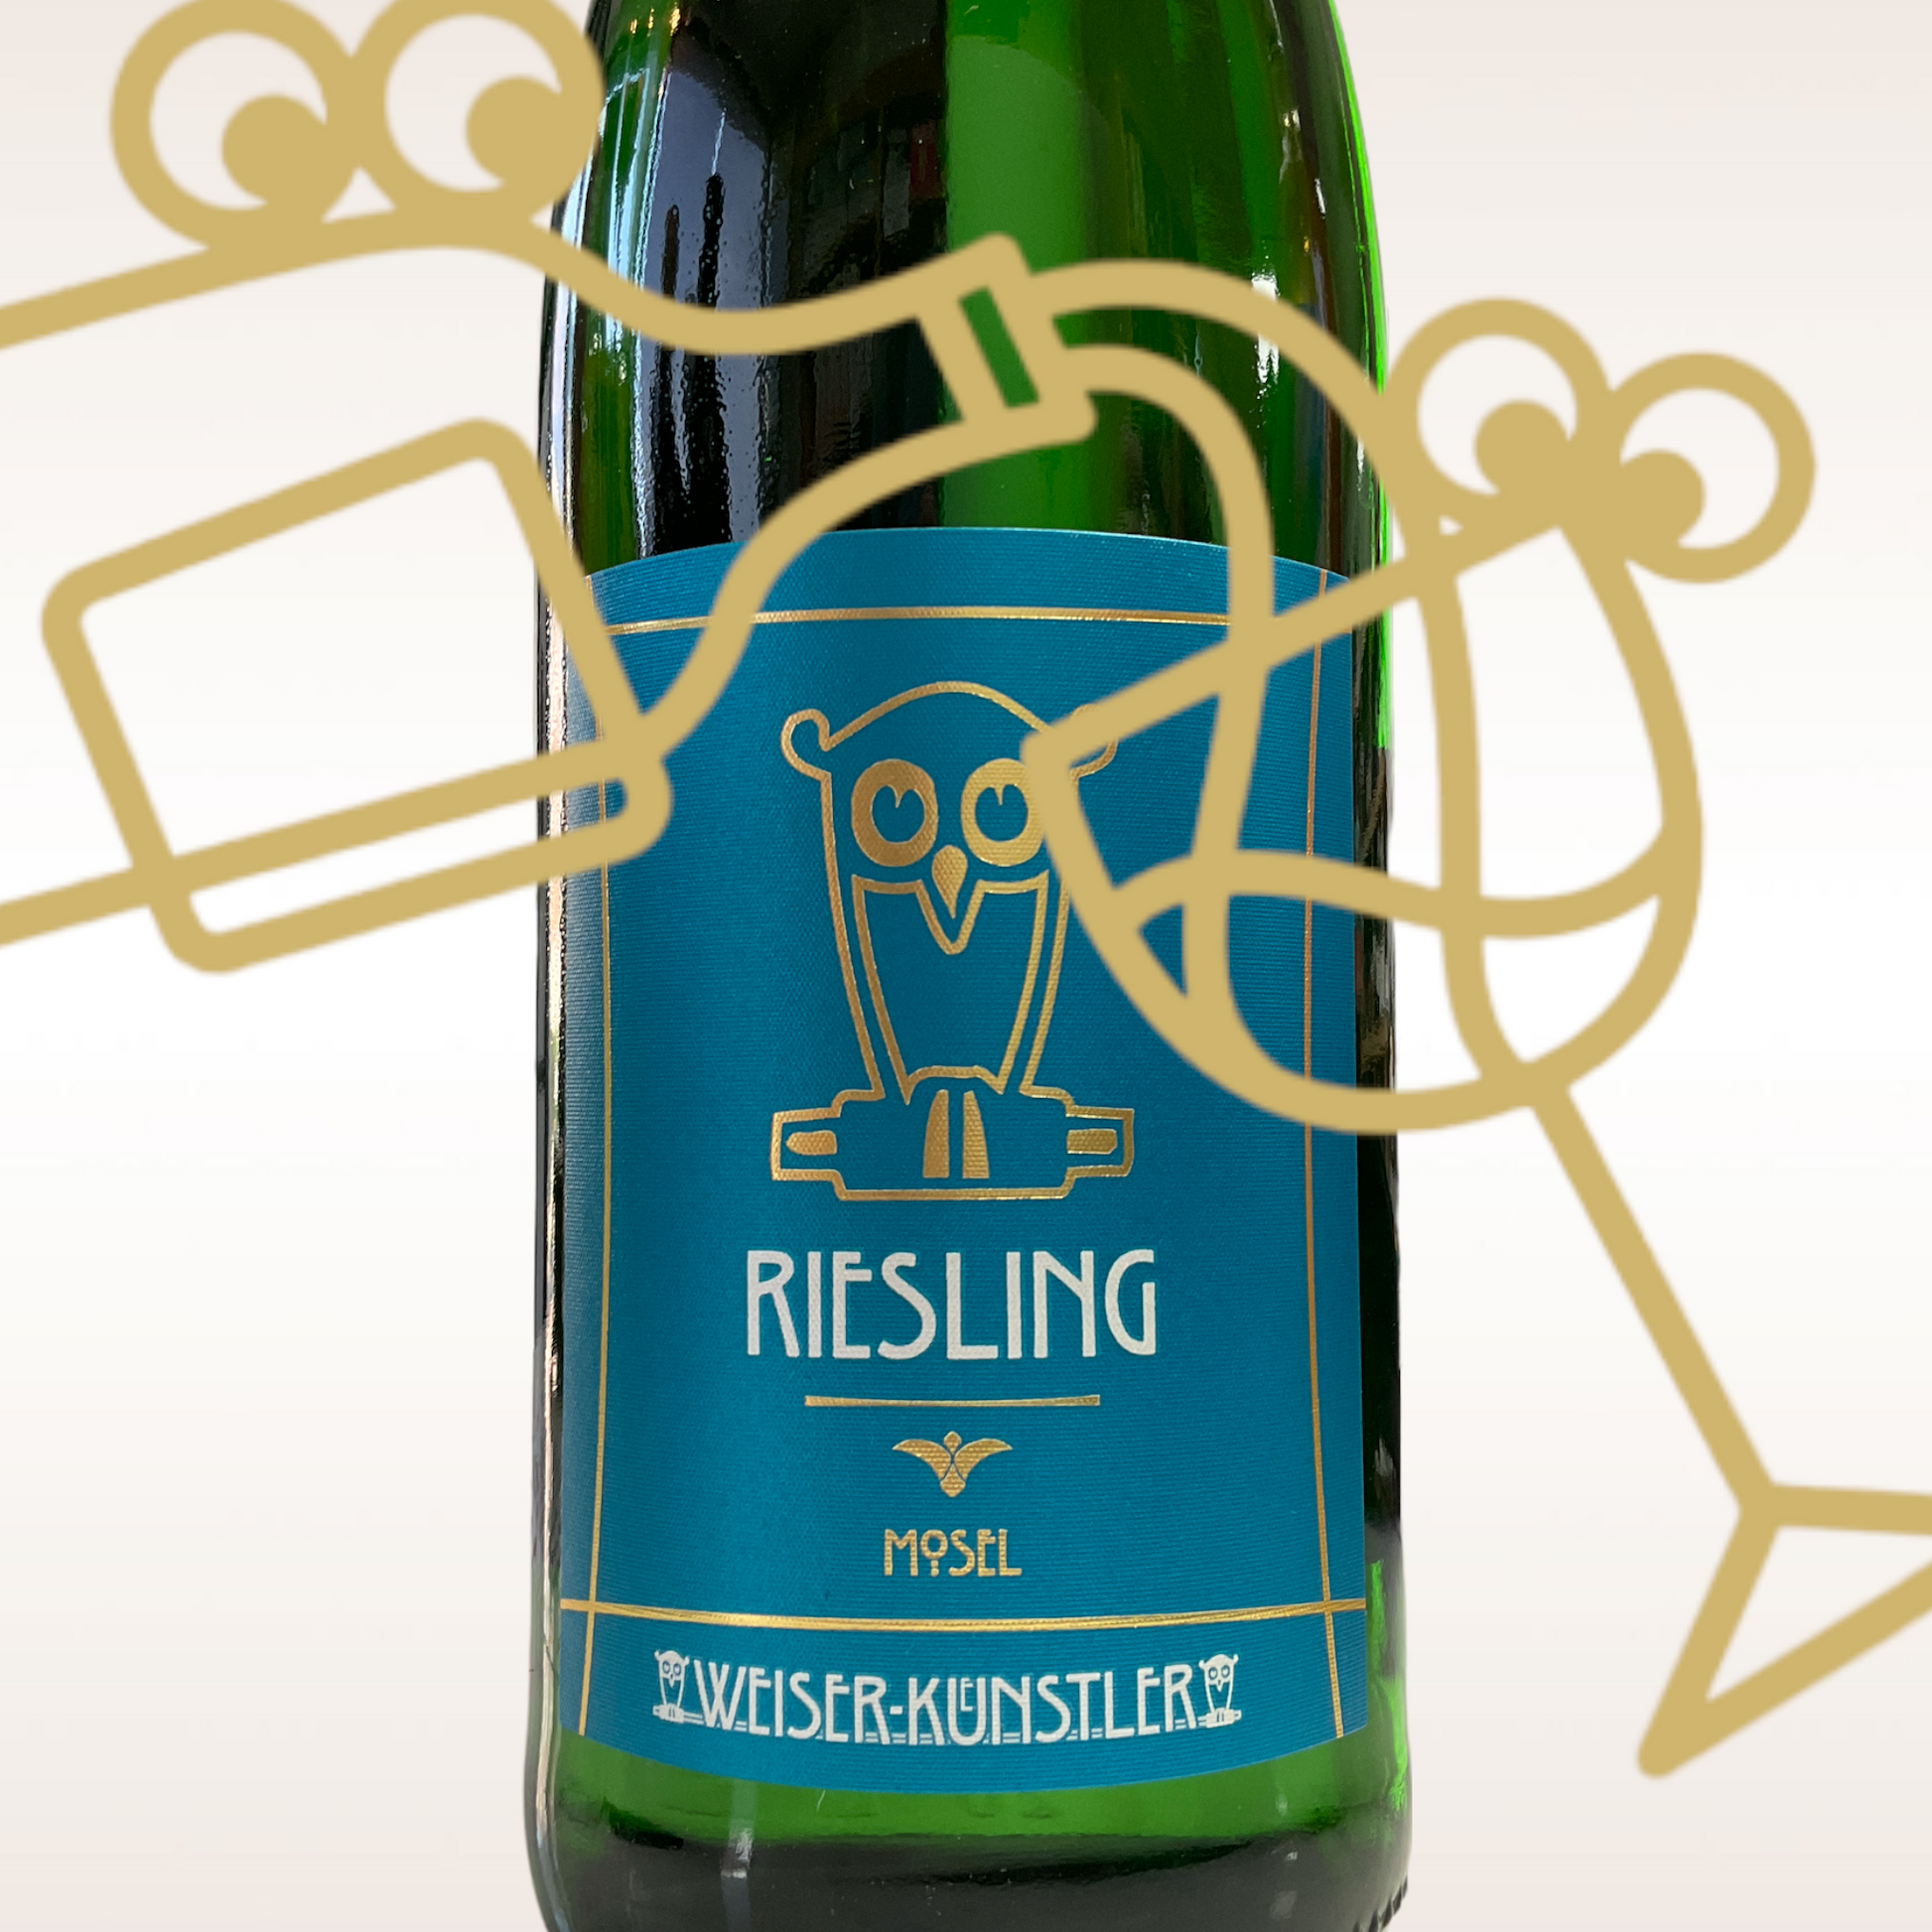 Weiser-Künstler Riesling Feinherb 2021 Mosel, Germany - Williston Park Wines & Spirits